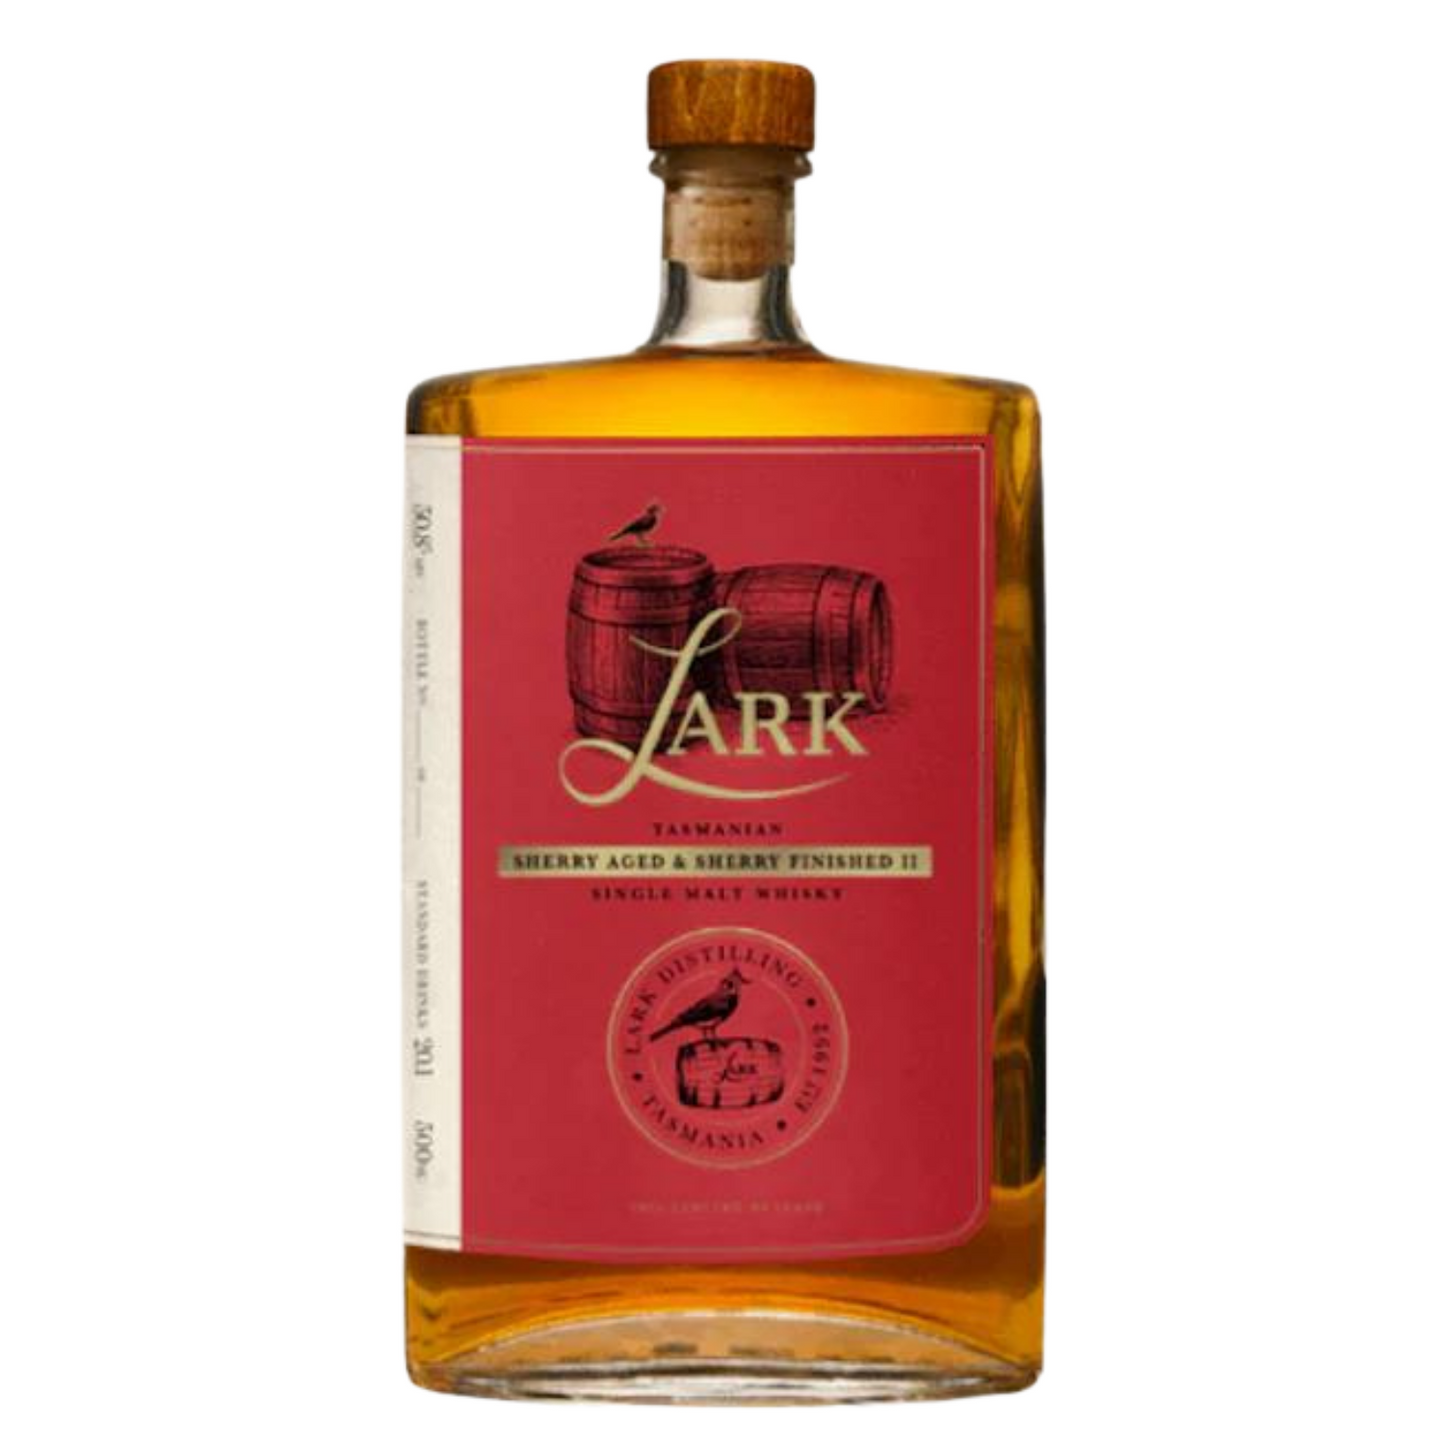 Lark Sherry Aged & Sherry Finished II Single Malt Whisky 500ml